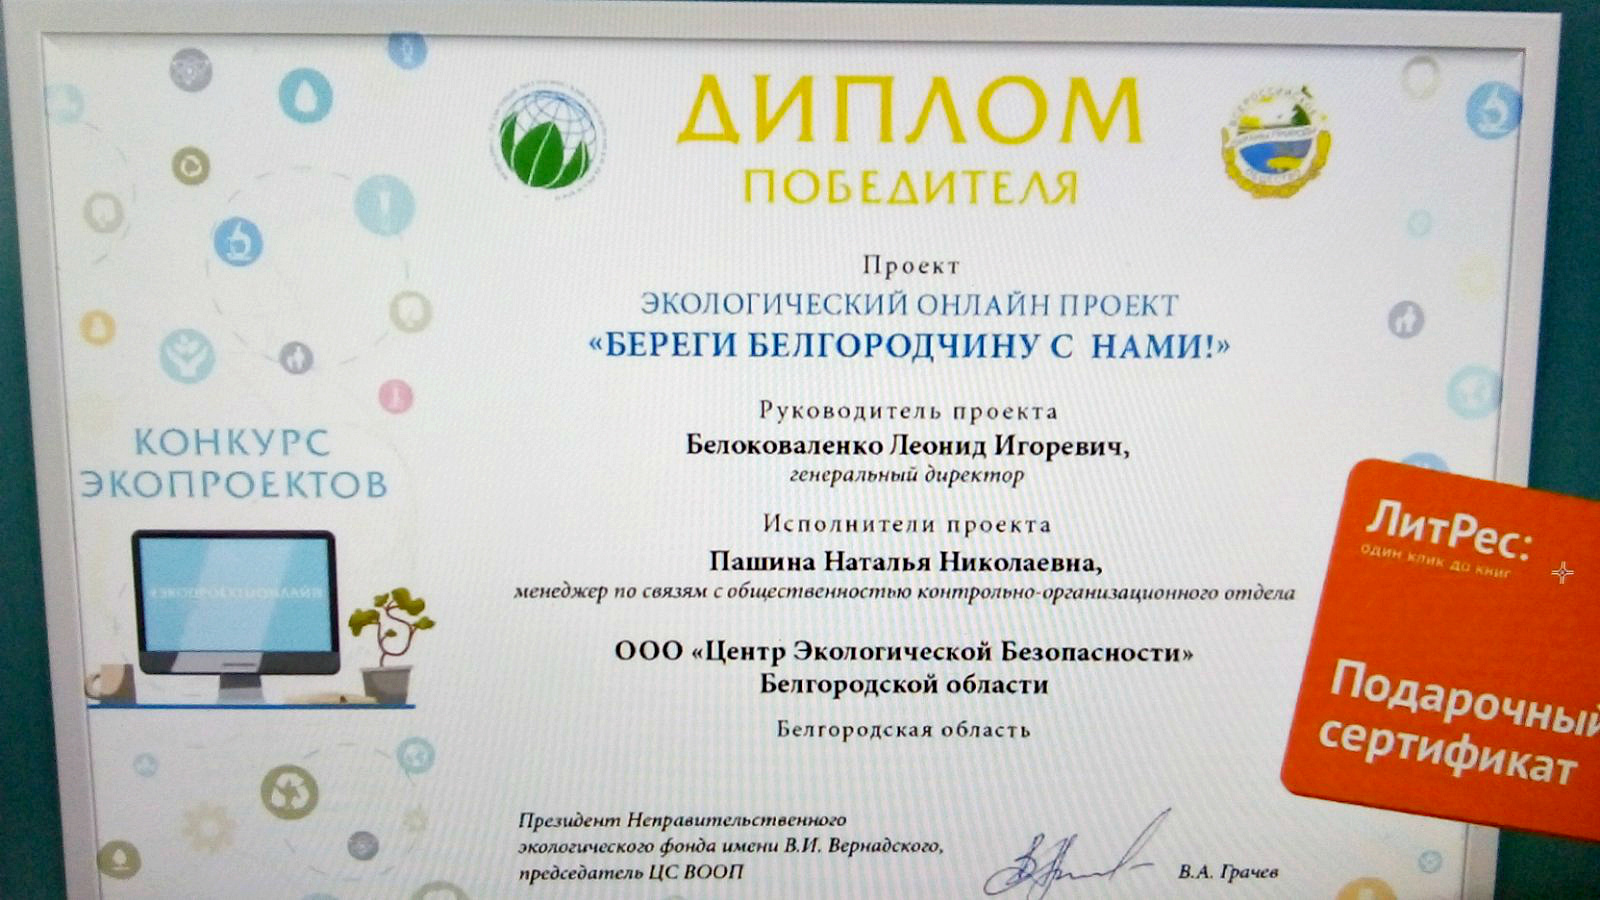 Проект «Береги Белгородчину с нами!» стал одним из победителей во всероссийском конкурсе